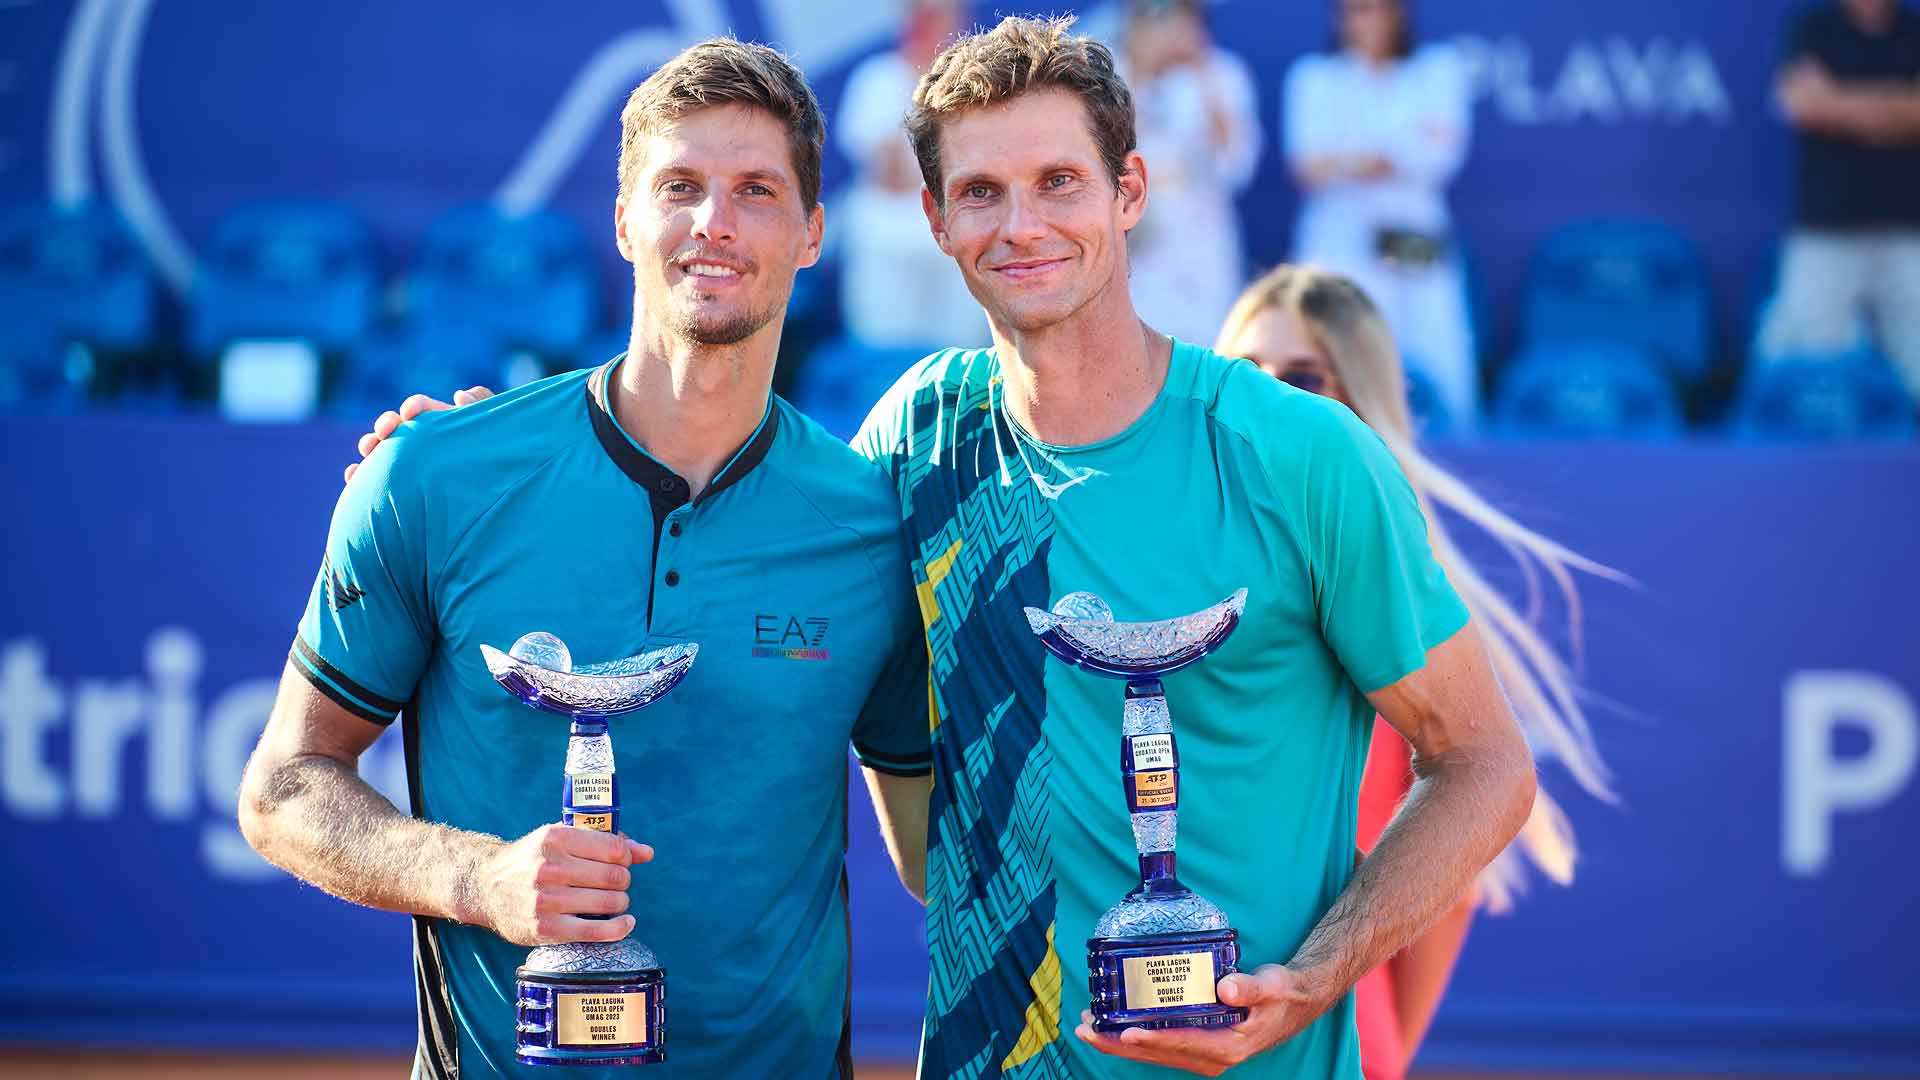 Nino Serdarusic y Blaz Rola celebran la conquista de su primer título ATP Tour de dobles el sábado en Umag.